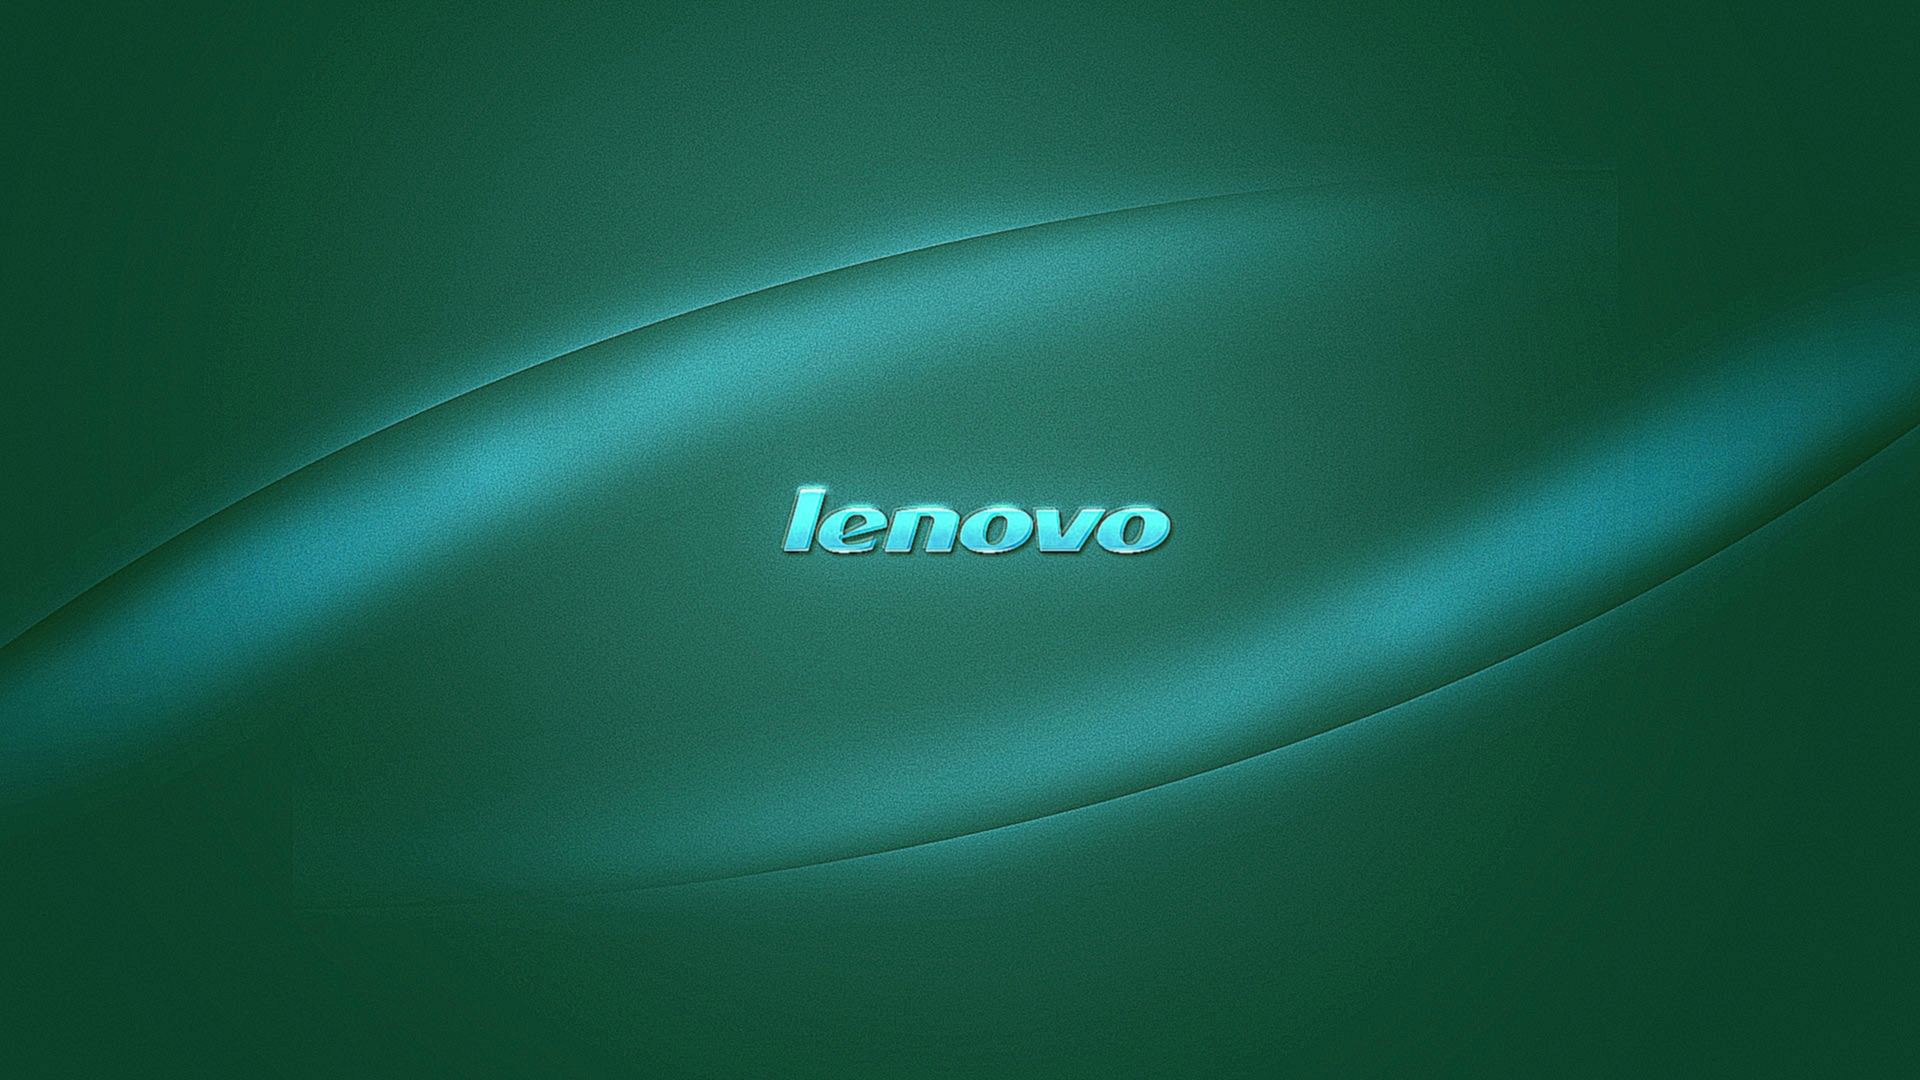 Lenovo Wallpaper. 